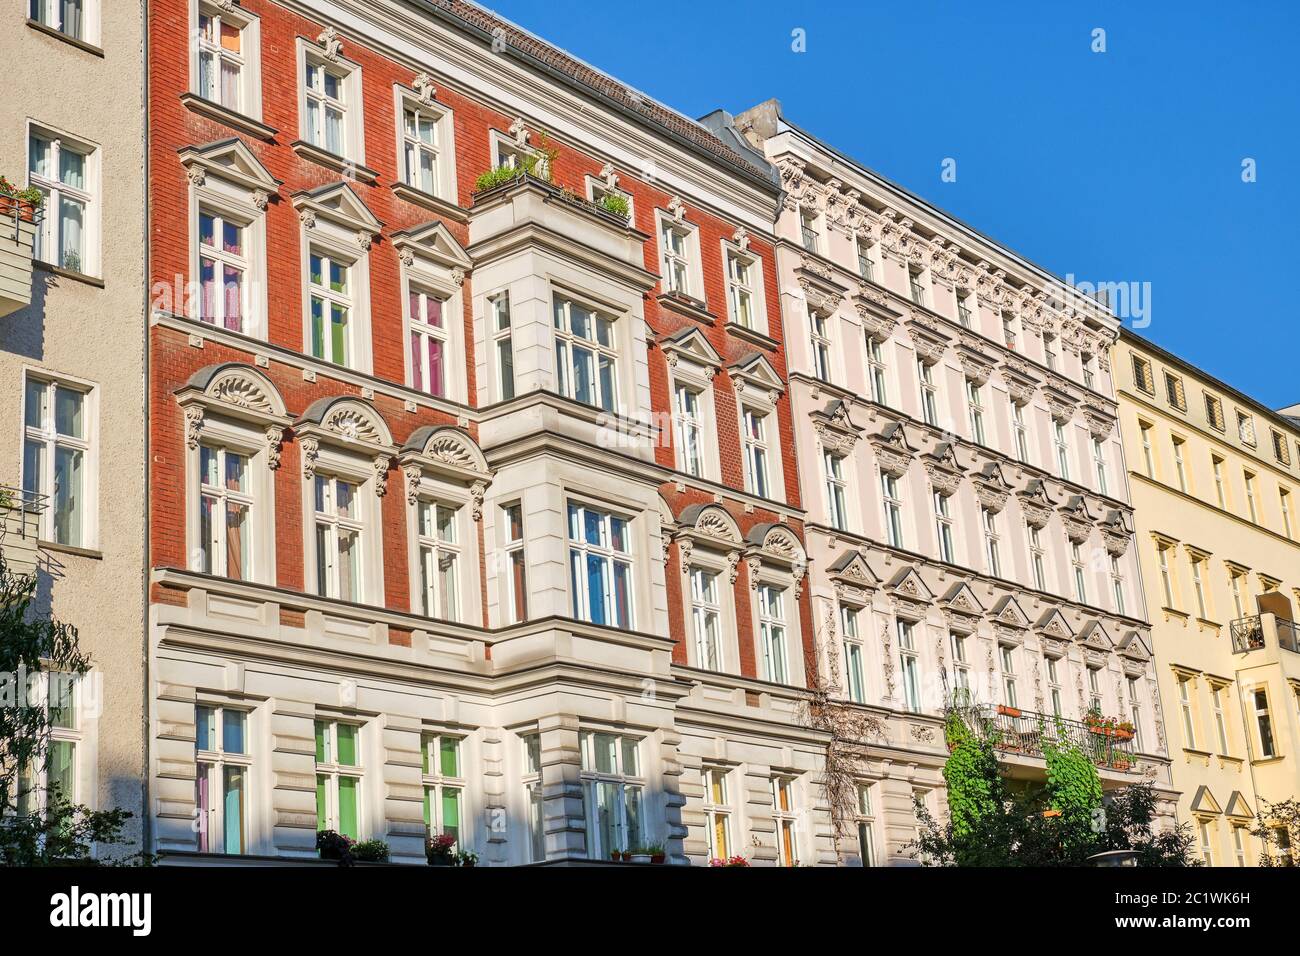 Vue avant du vieil appartement rénové certains bâtiments vus à Berlin, Allemagne Banque D'Images